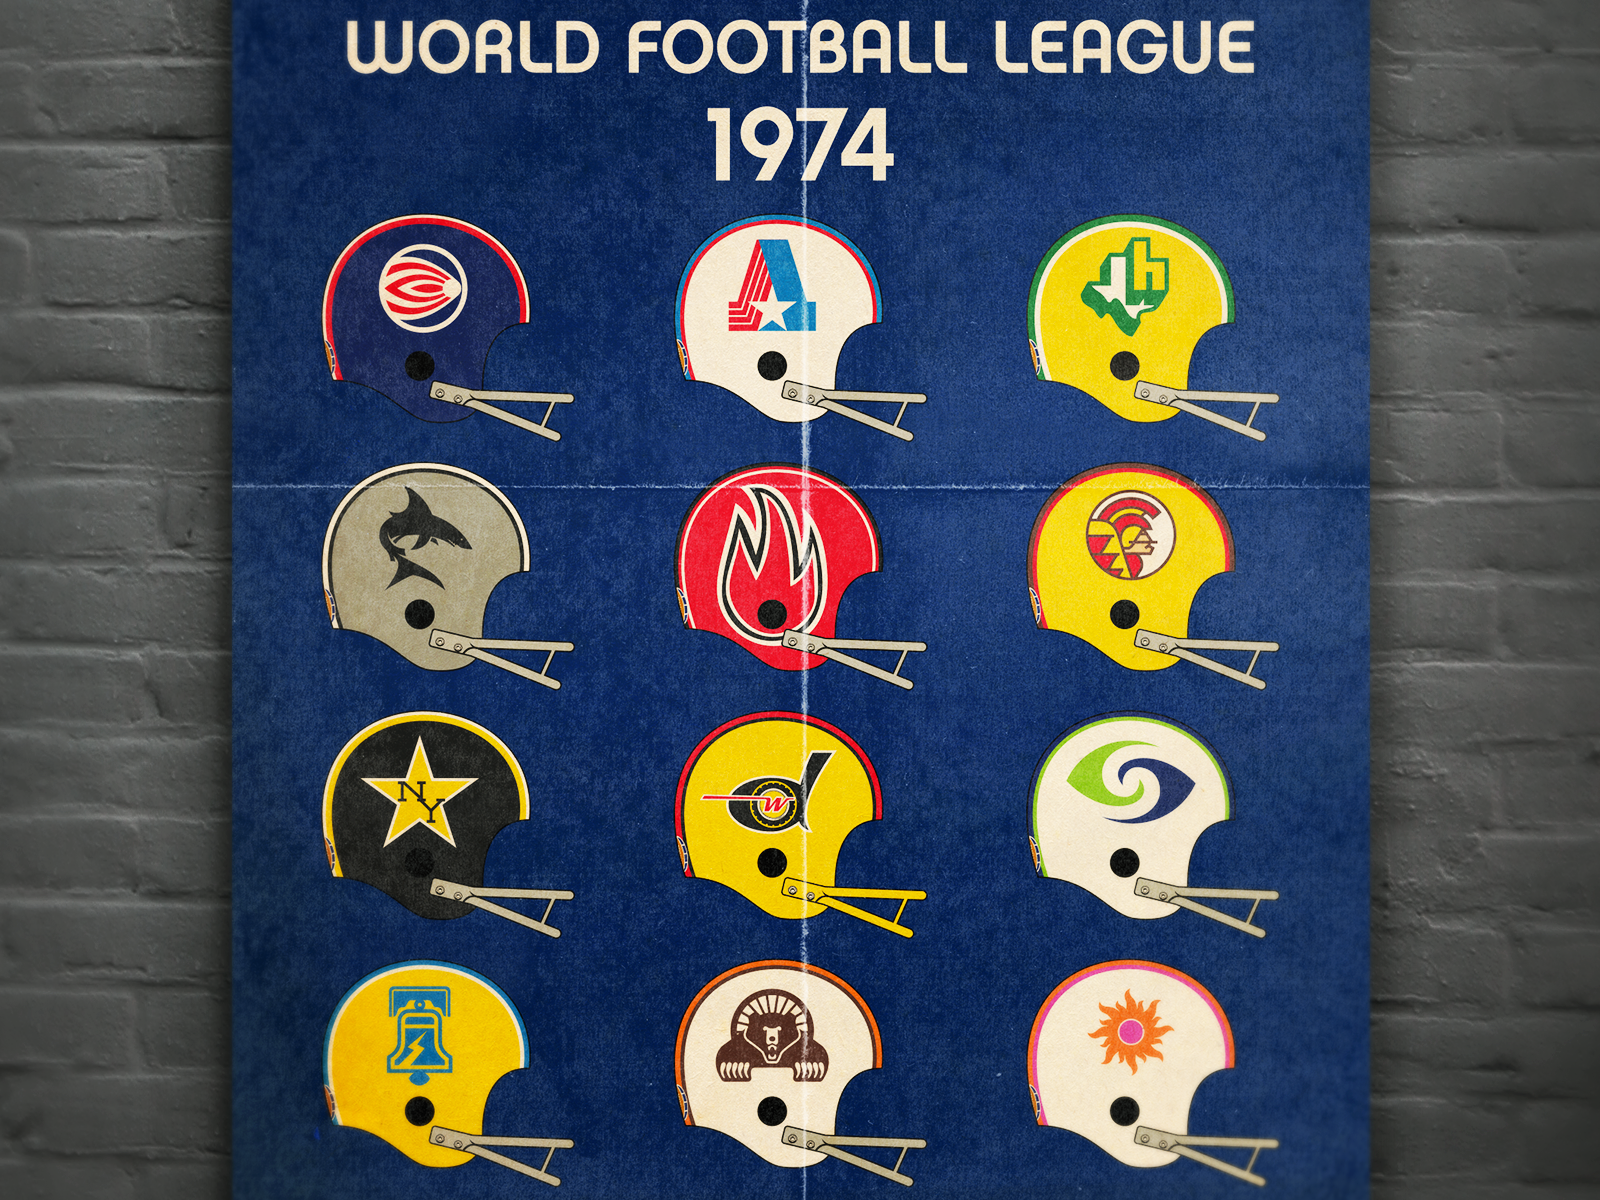 World Football League